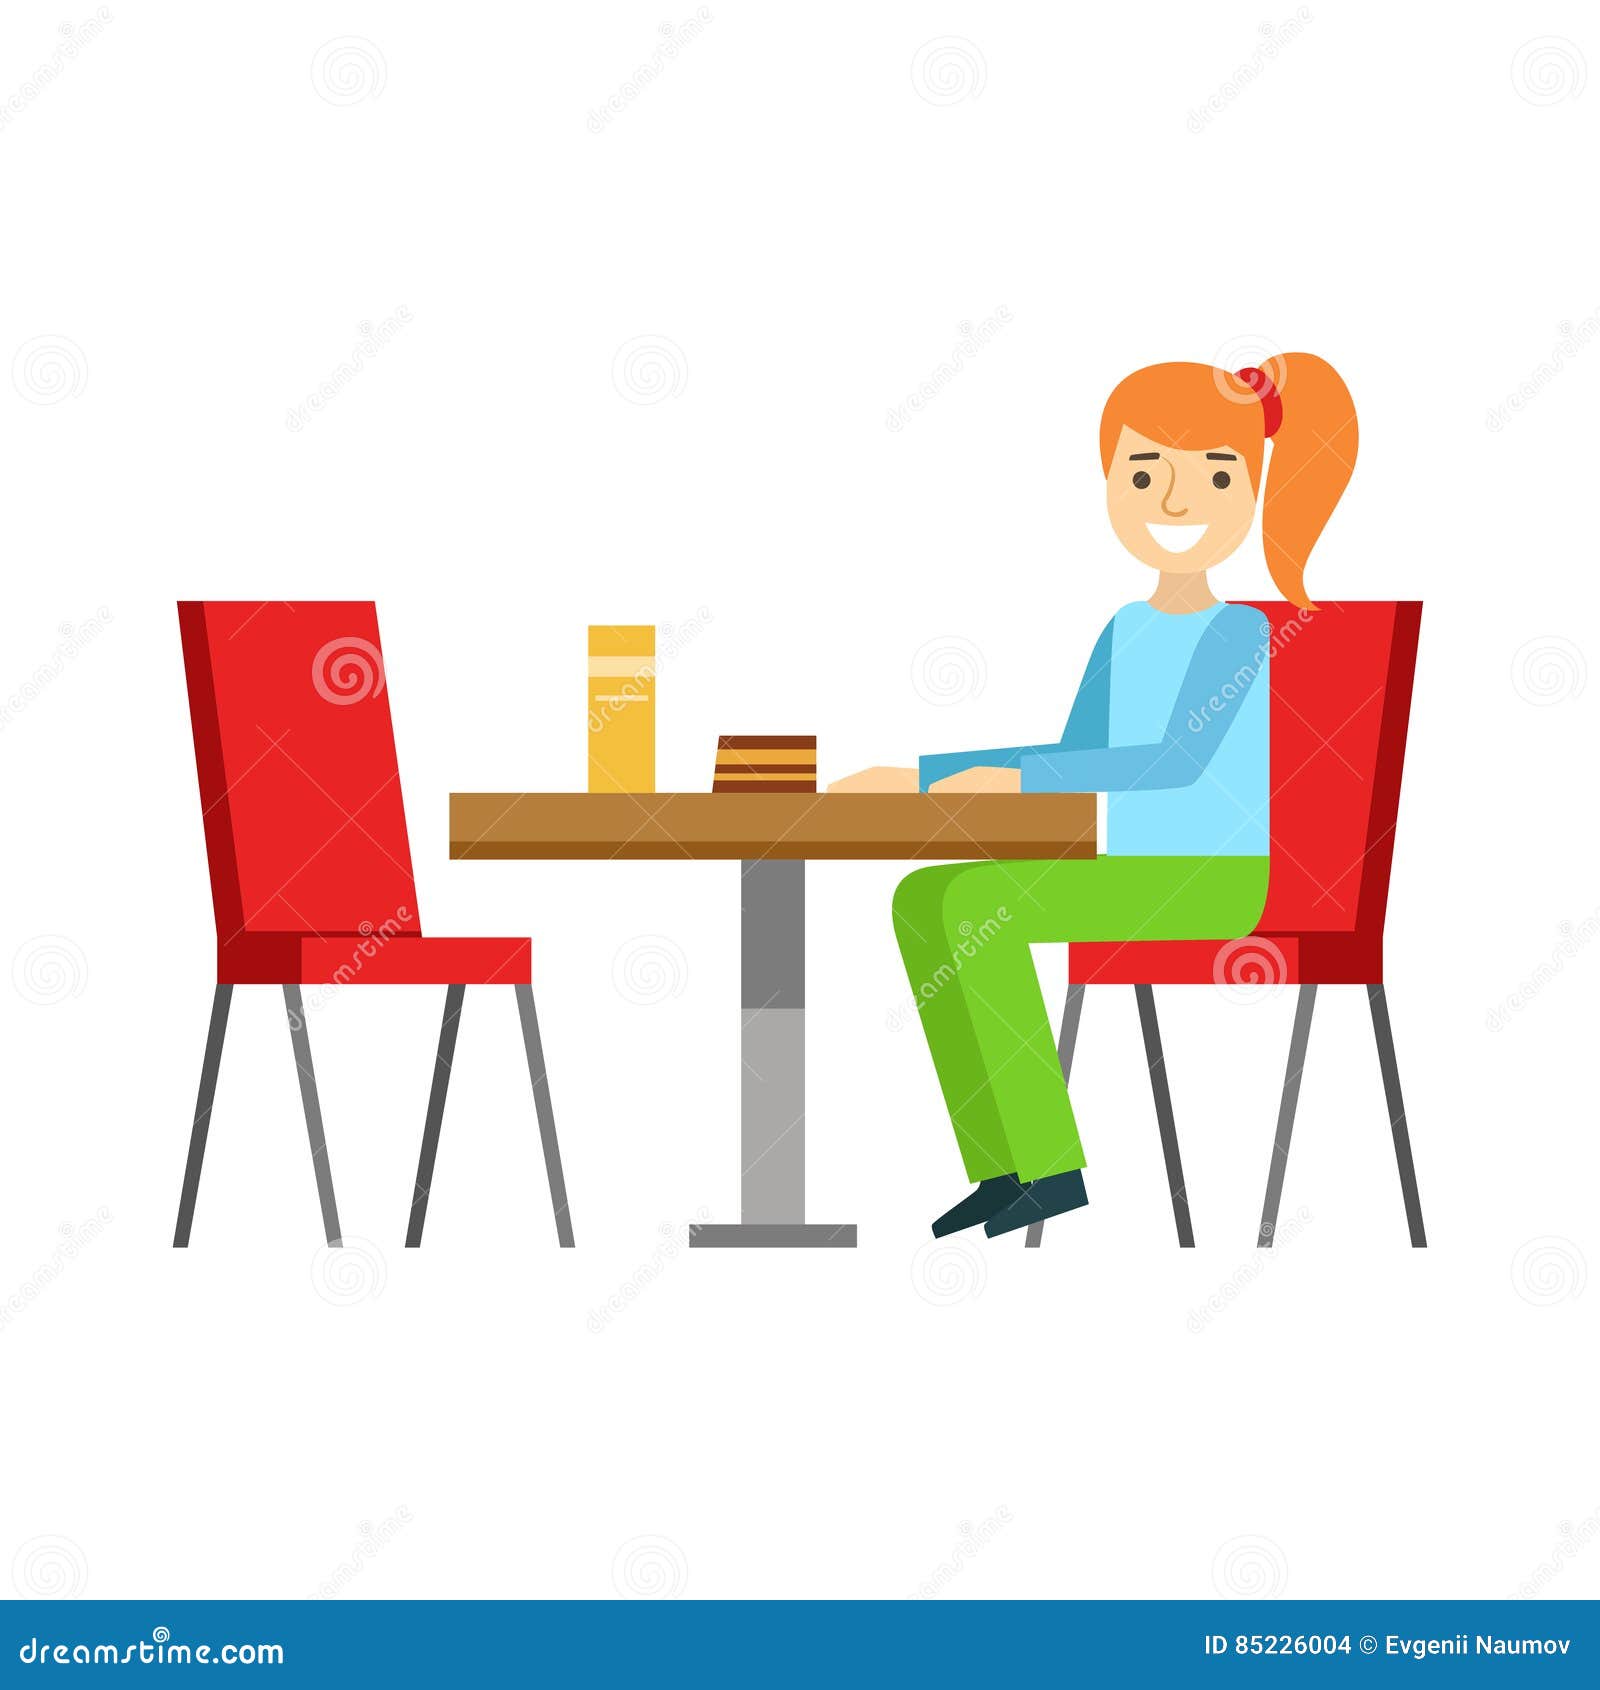 Сидит в столовой. Человек за обеденным столом. Иллюстрация сидят за столом. Человек за столом в столовой. Человек сидит за кухонным столом.